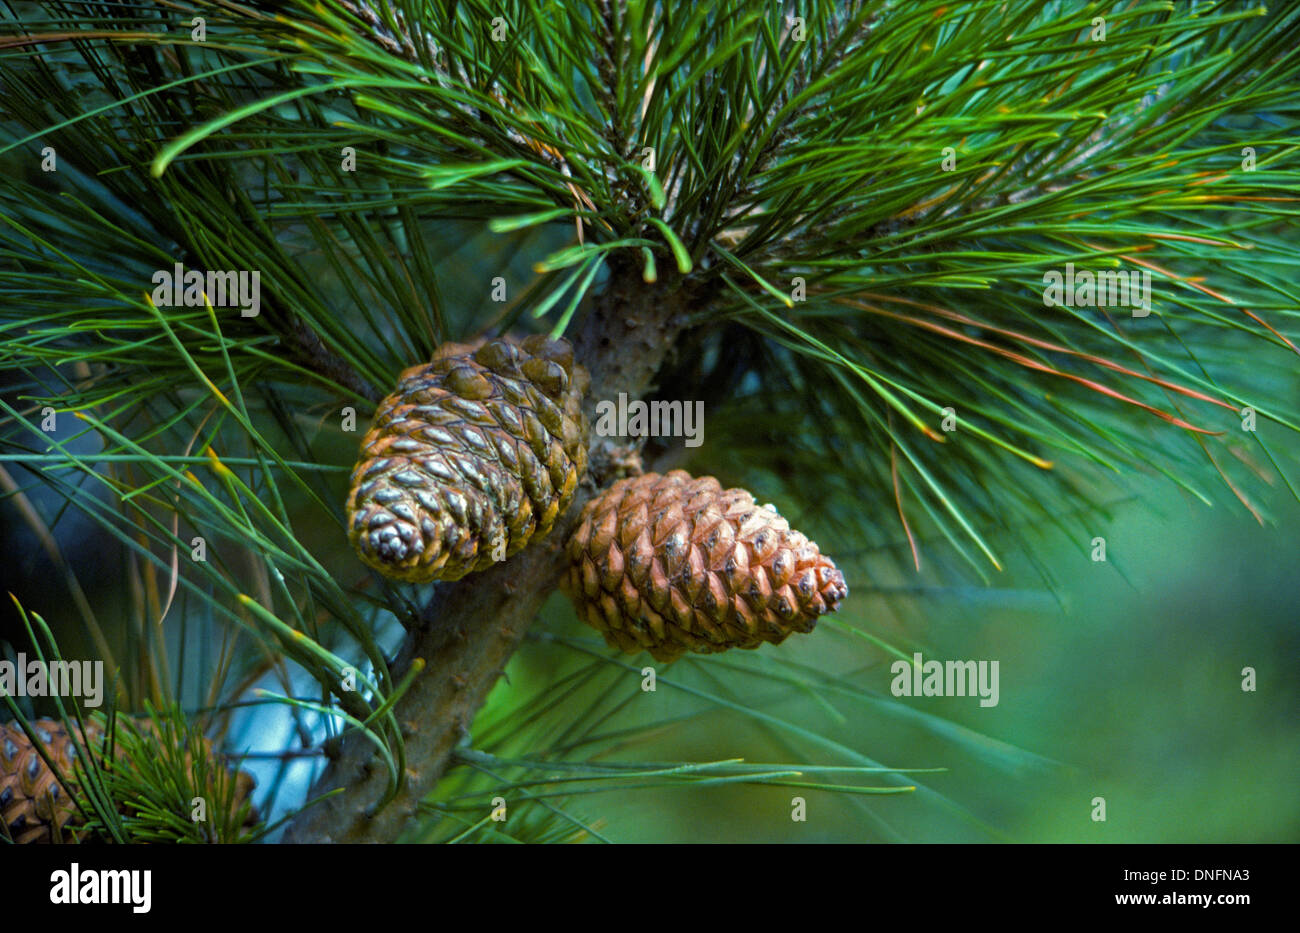 Les graines des cônes de l'arbre de pin évêque rares ont été photographiés le long de la côte de l'océan Pacifique dans le comté de San Diego en Californie du Sud, aux États-Unis. Banque D'Images